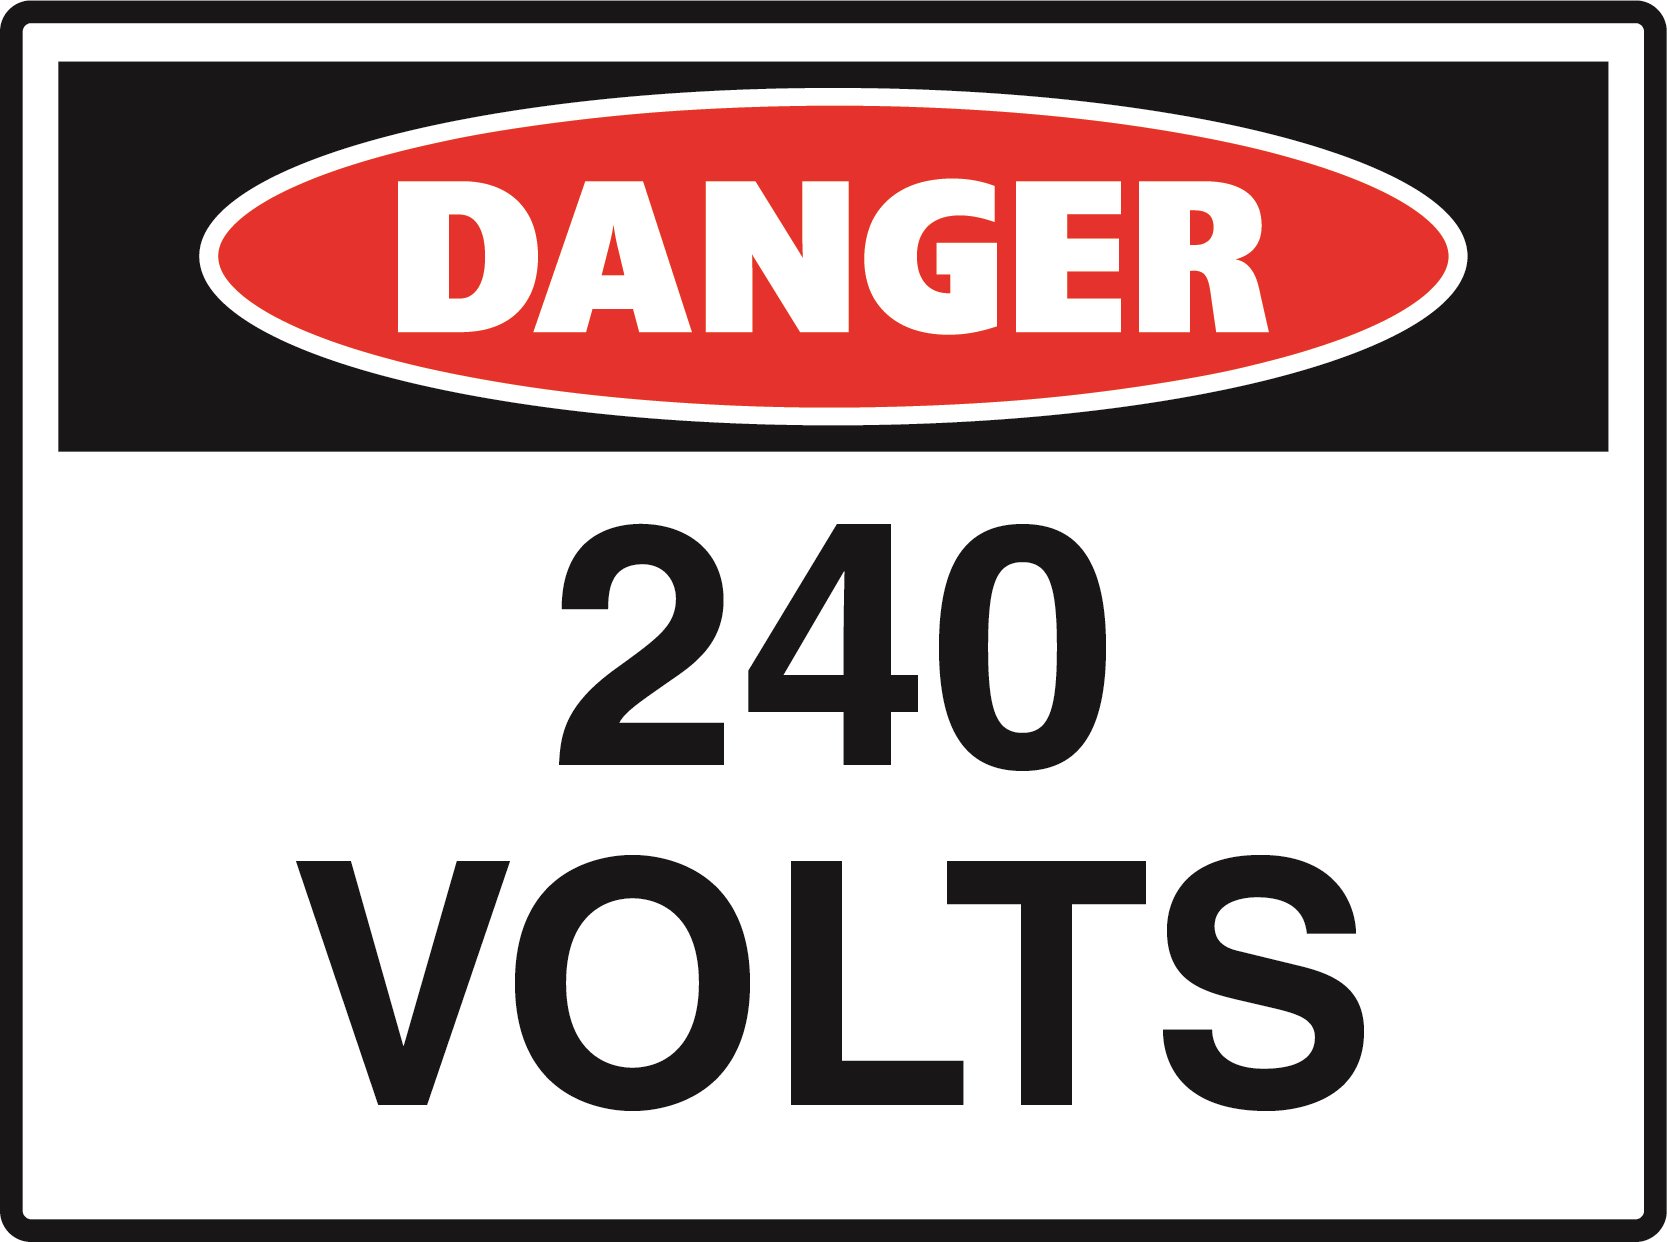 Danger - 240 Volts - 600x450